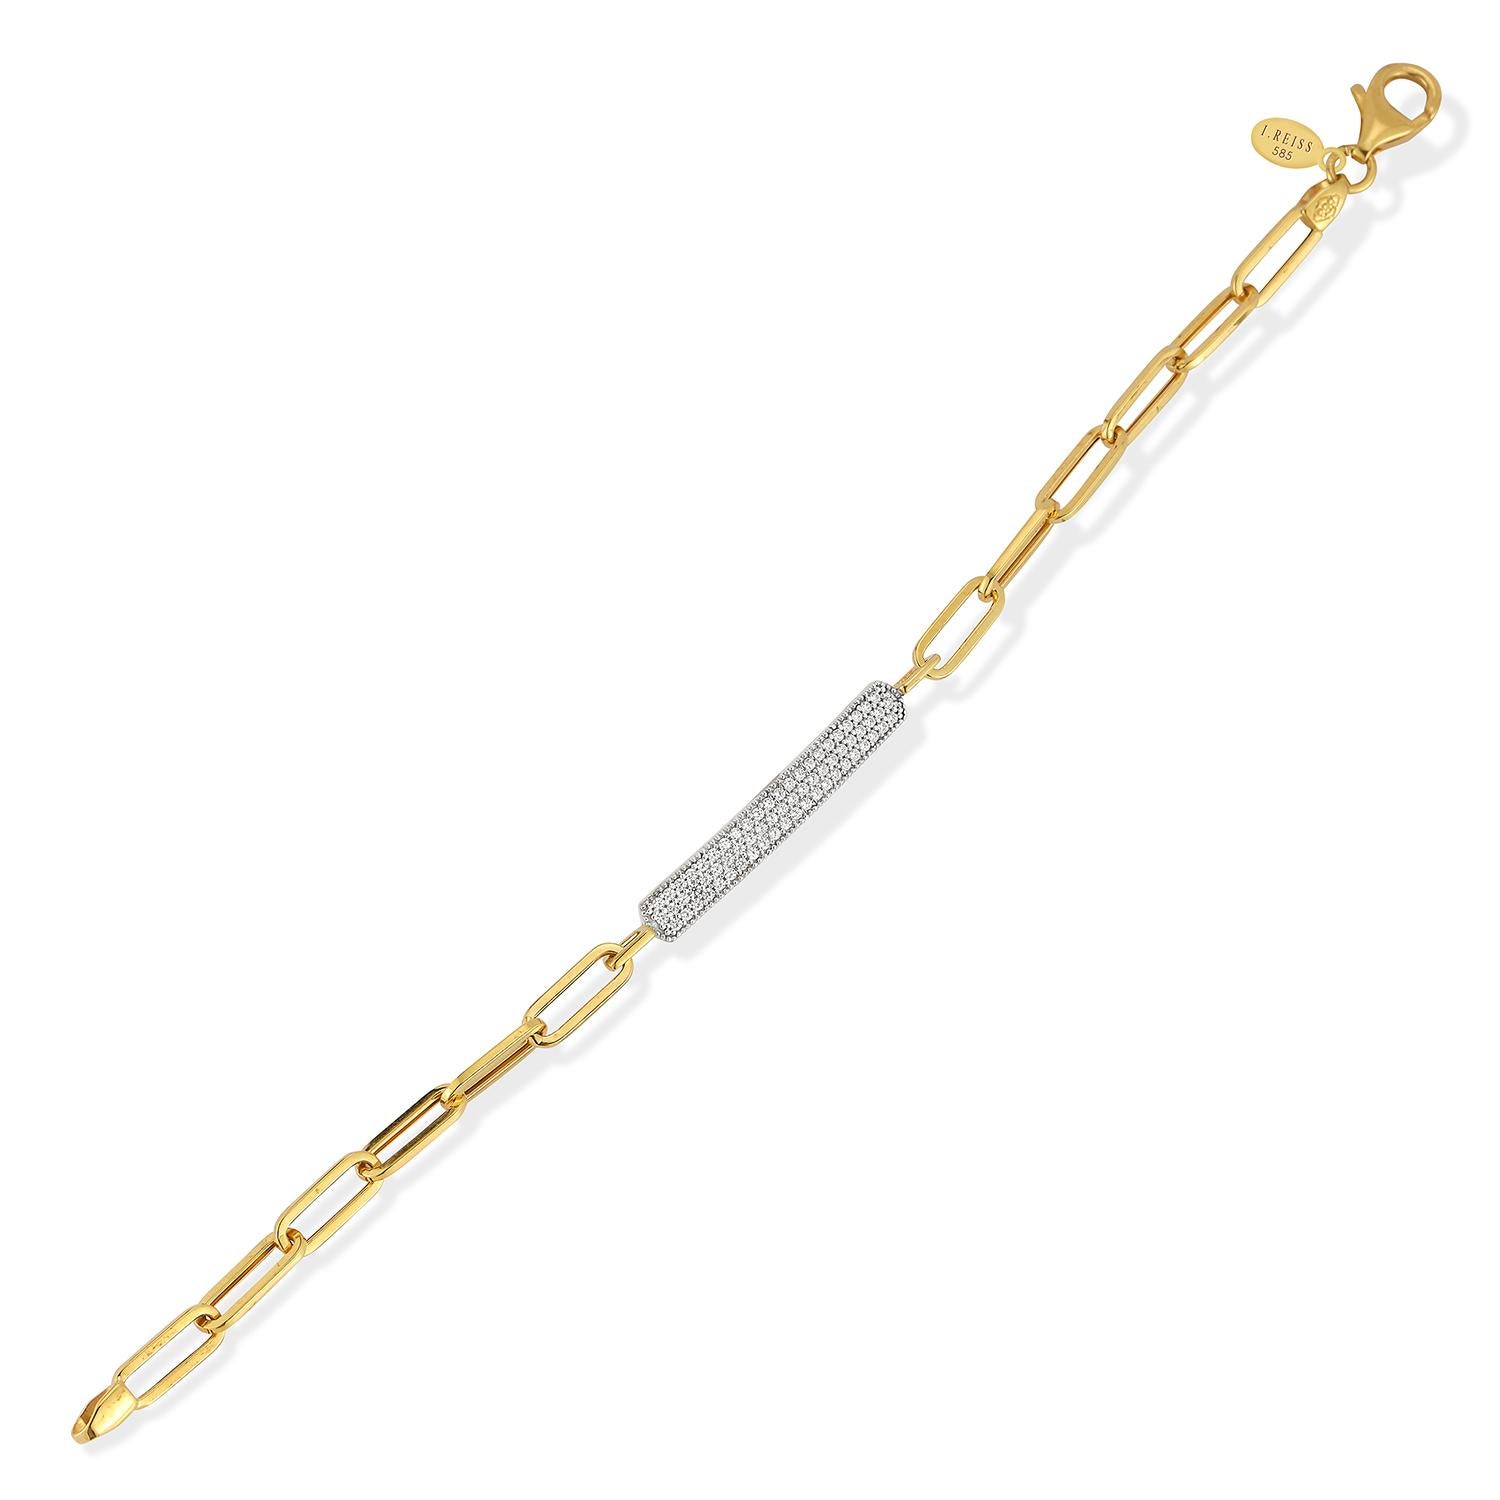 Bracelet d'identification en or jaune 14 carats à maillons ouverts en forme de trombones, rehaussé de 0,40 carats de diamants sertis en pavé.  Fermoir à griffe de homard.
